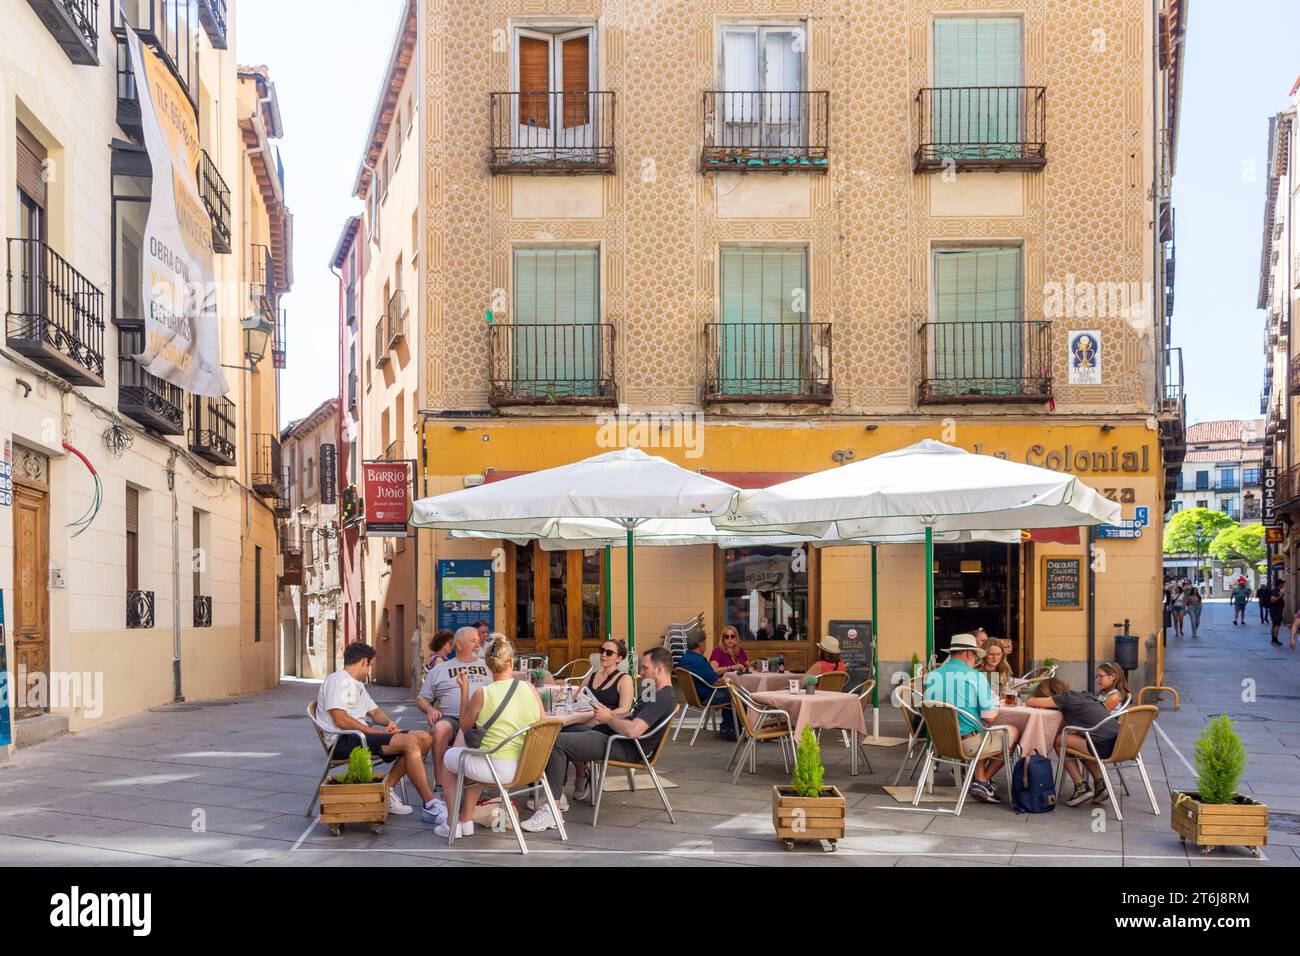 La Colonial Cafe, Plaza del Corpus, Jewish Quarter, Segovia, Castile and León, Kingdom of Spain Stock Photo